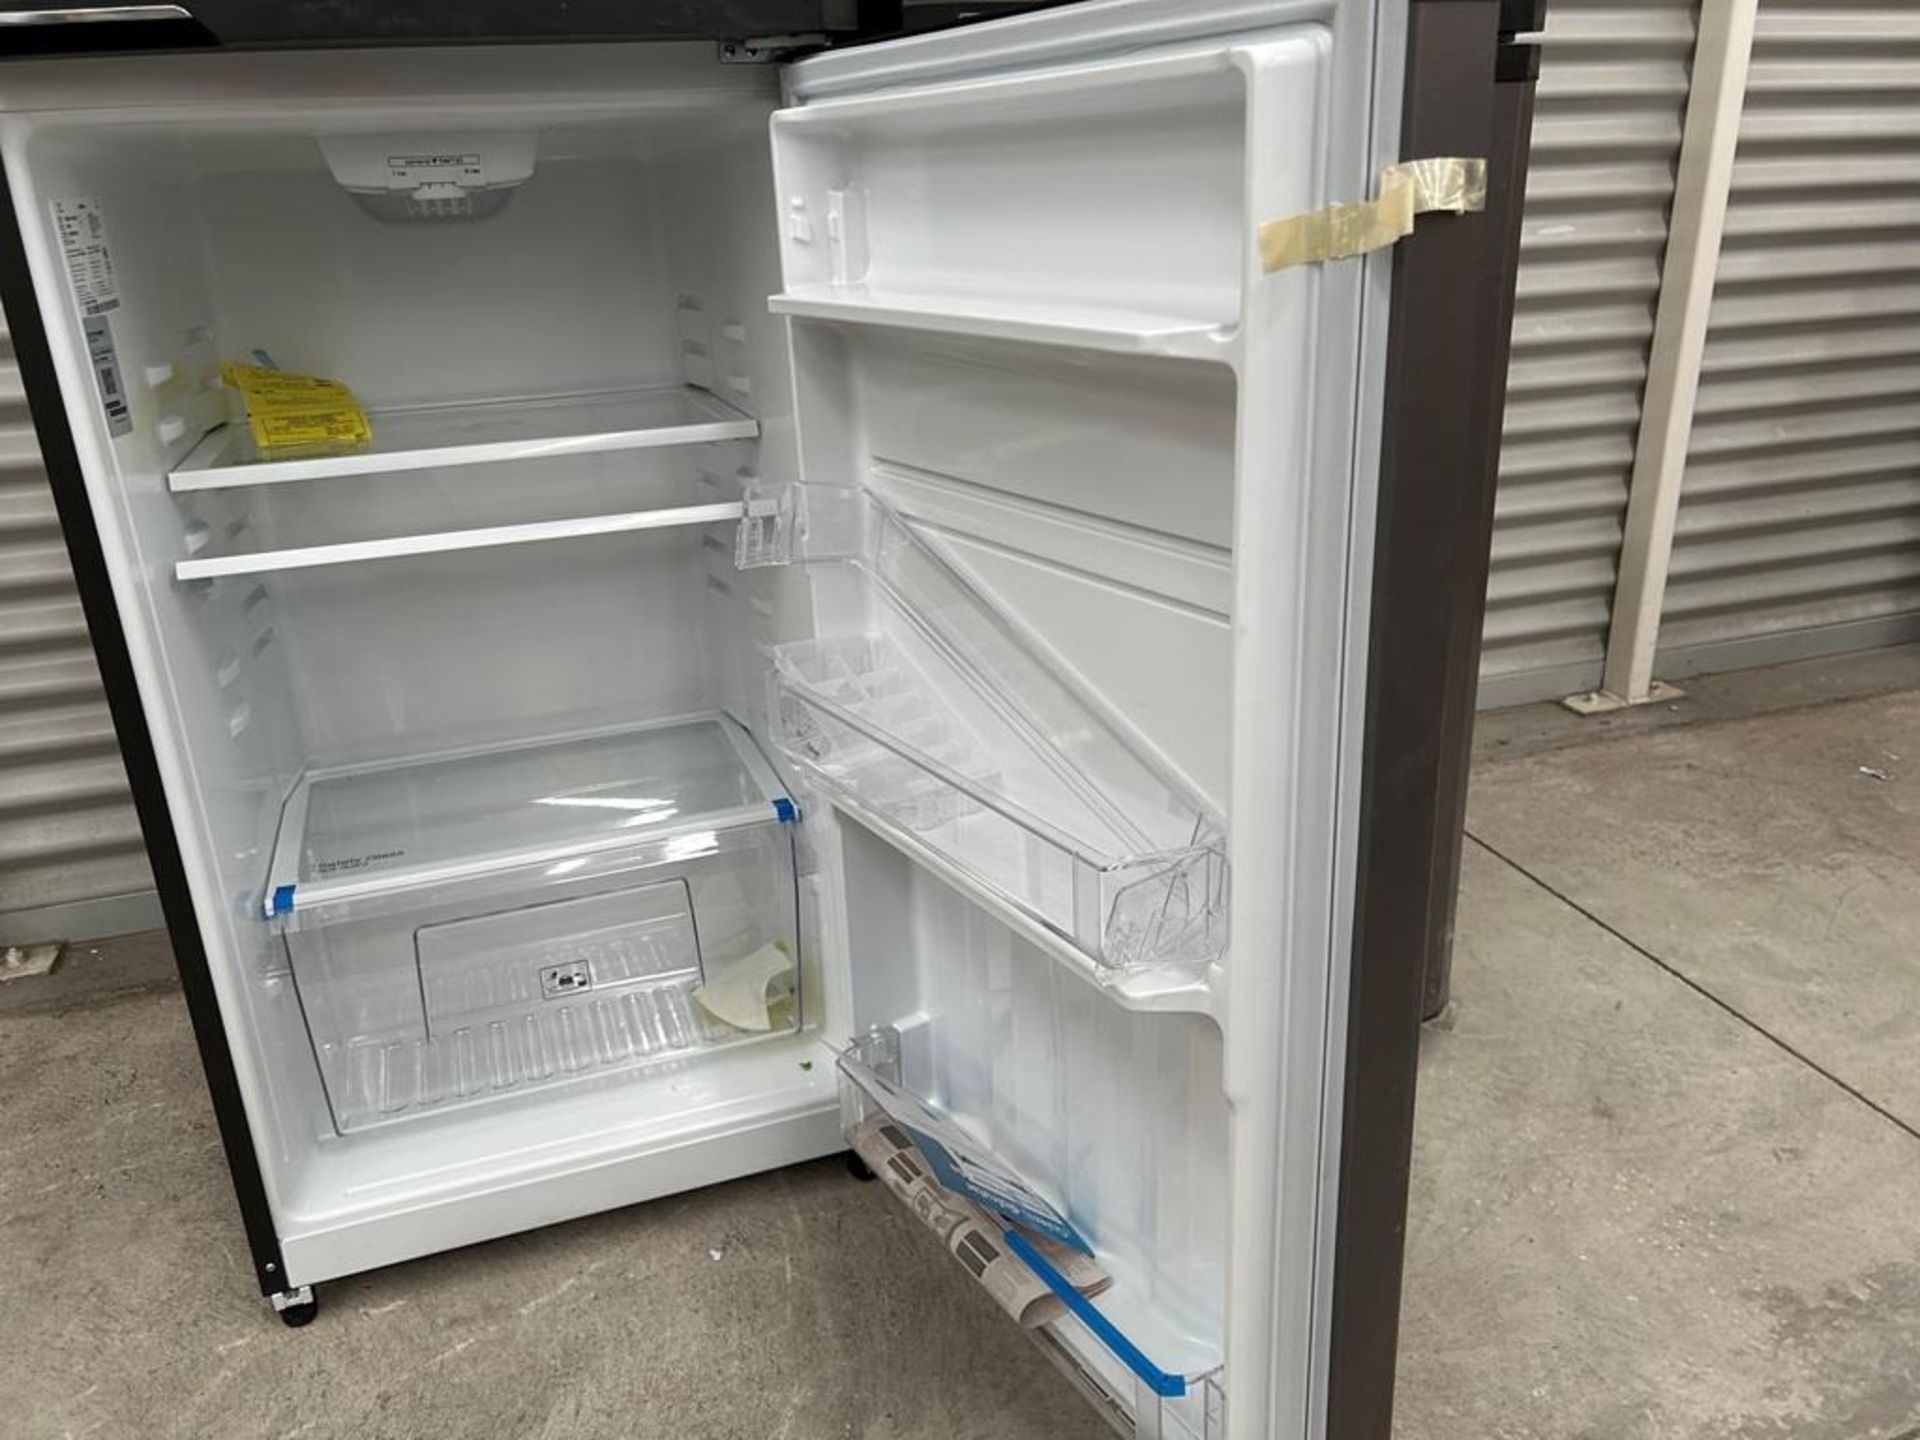 Lote de 2 refrigeradores contiene: 1 Refrigerador Marca MABE, Modelo RME360PVMRM0, Serie 04453, Col - Image 6 of 16